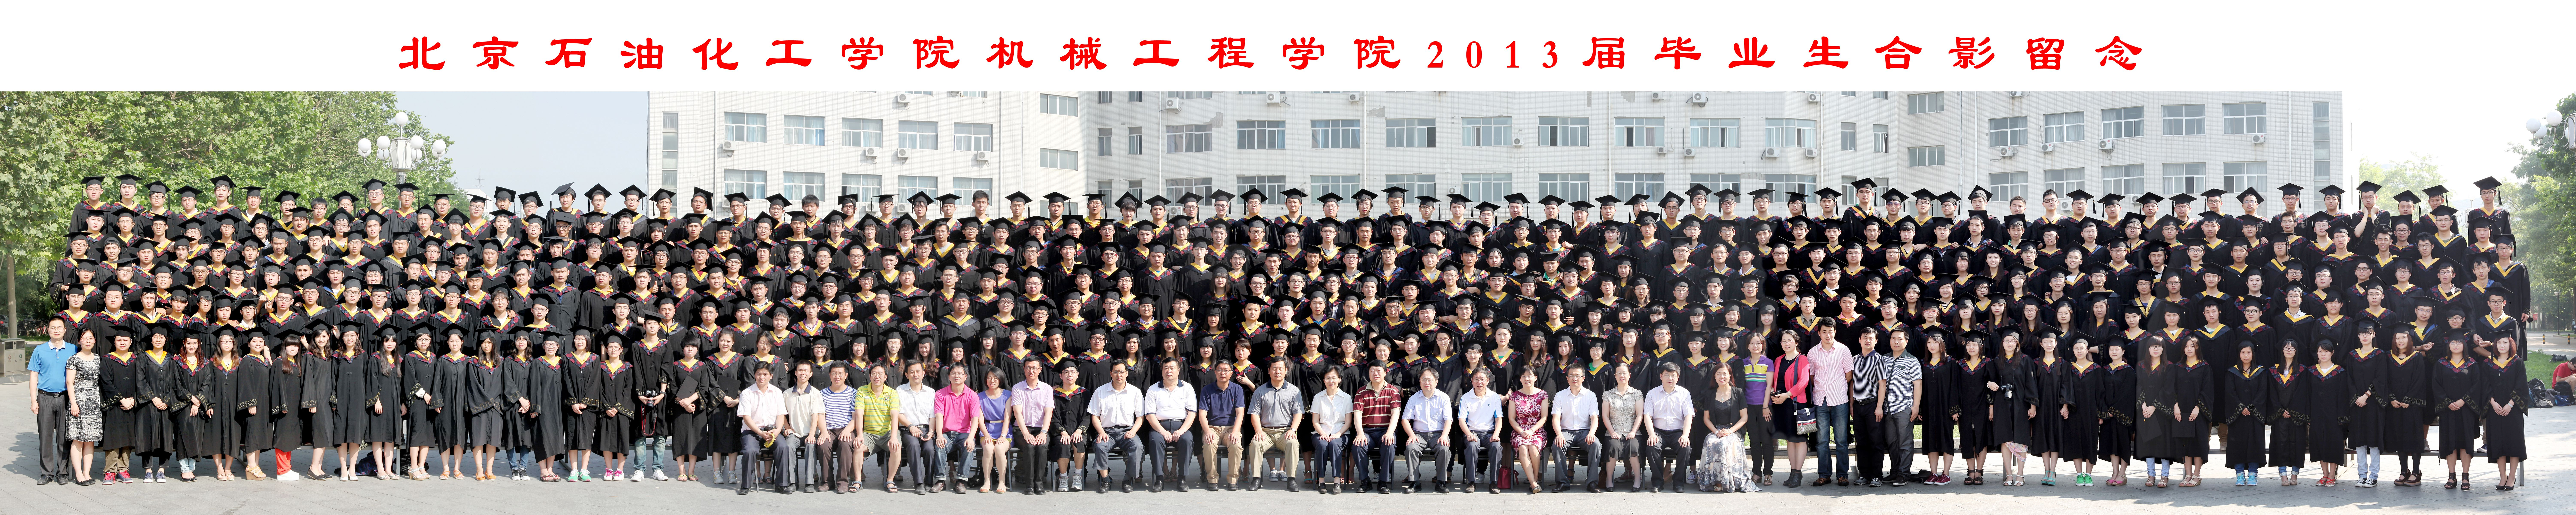 北京石油化工学院机械工程学院2013届毕业生合影-1.jpg